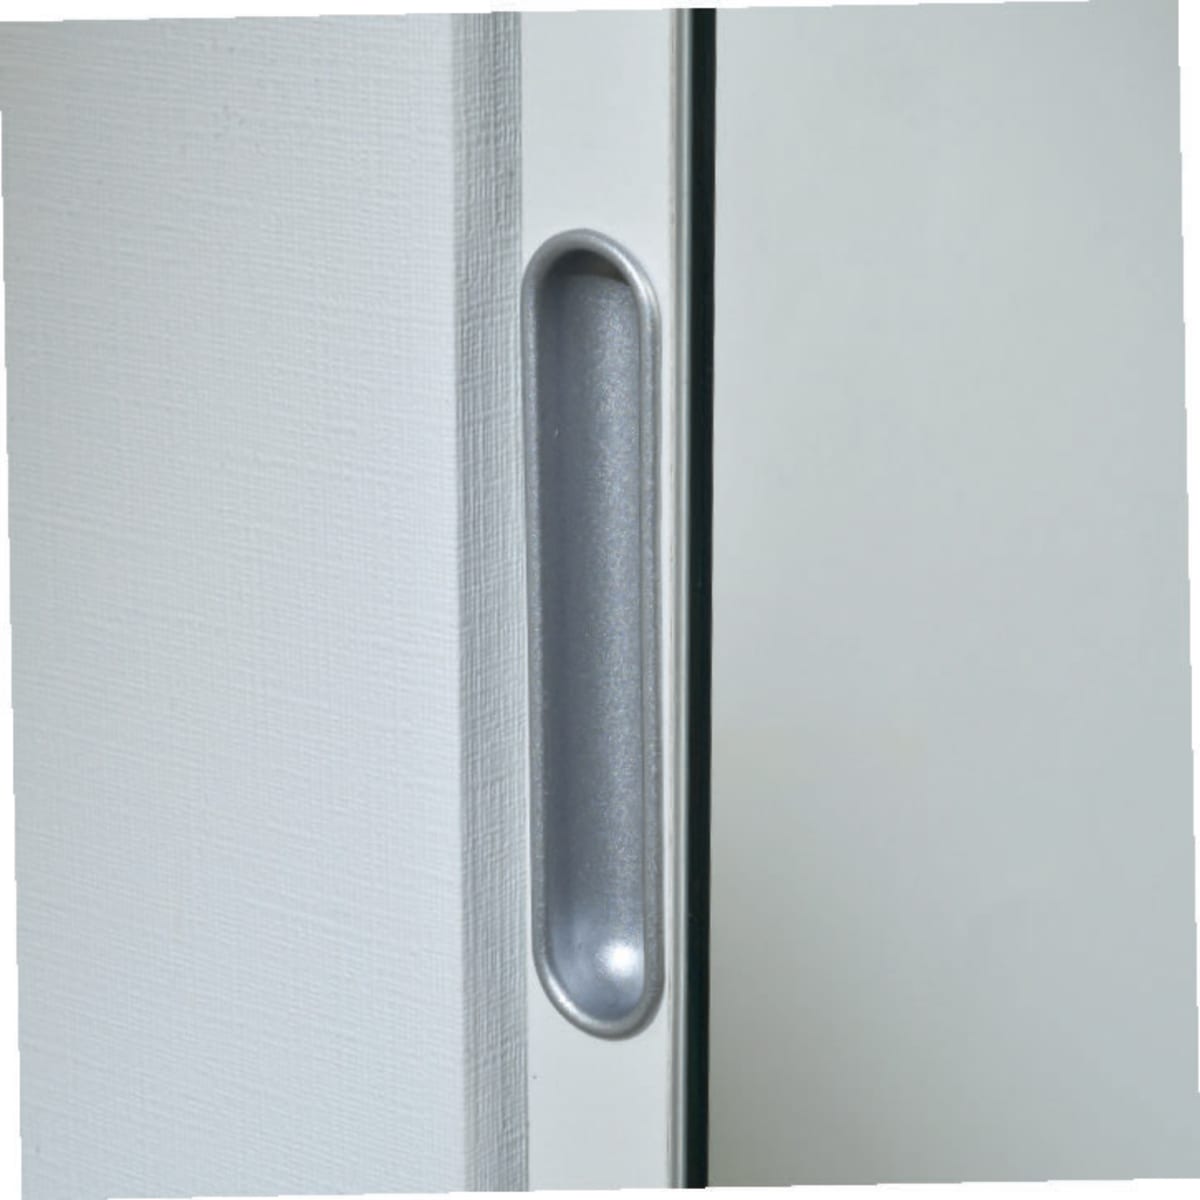 MIRROR DOOR SHELTER 10 PAIR W50xD18xH180CM IN MELAMINIUM WHITE